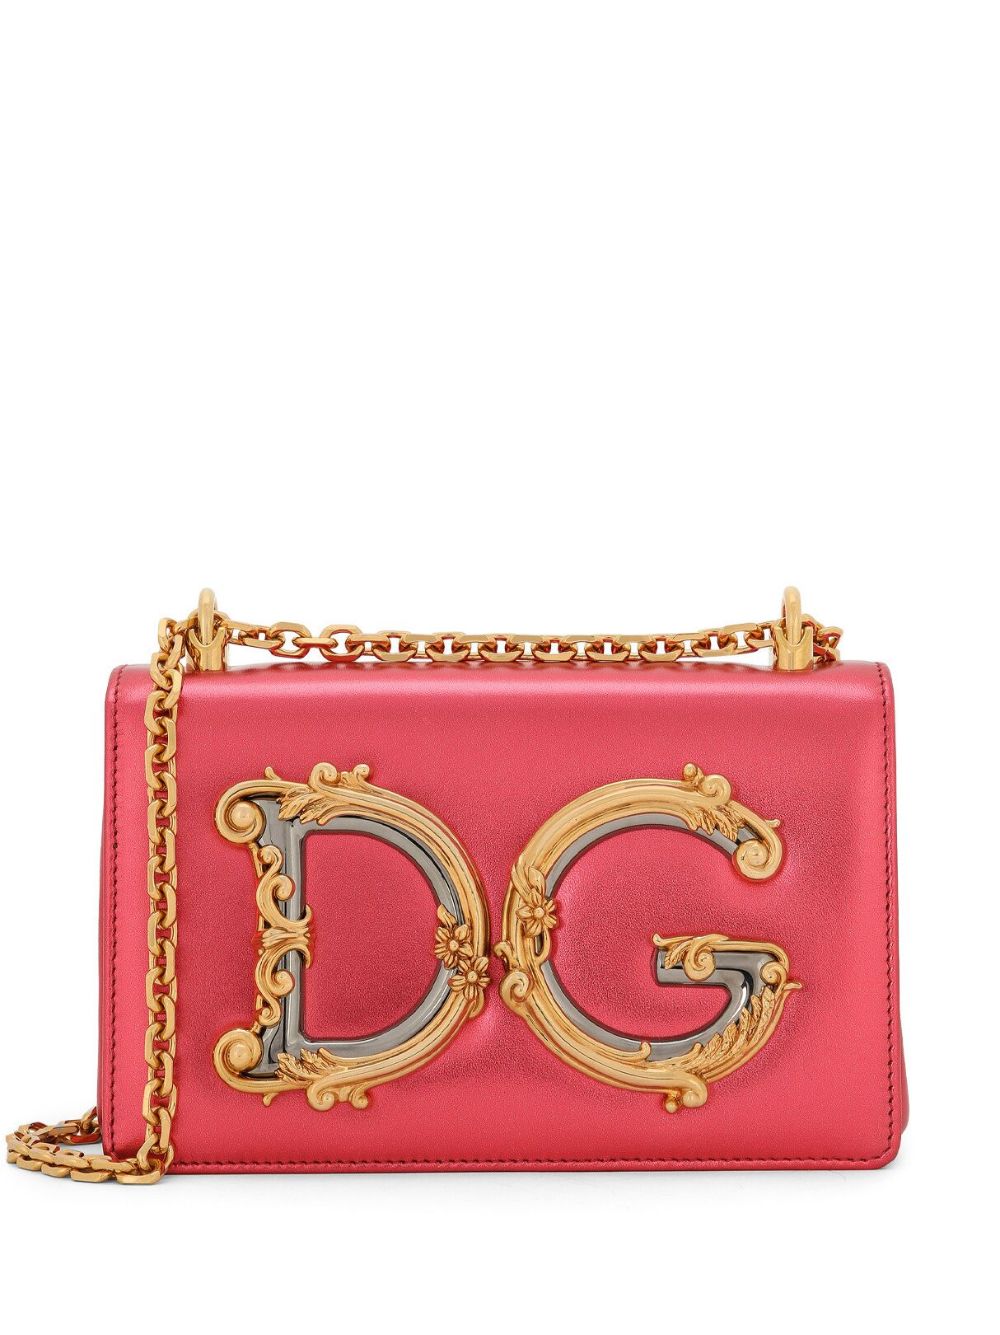 Image 1 of Dolce & Gabbana DG Girls leather shoulder bag